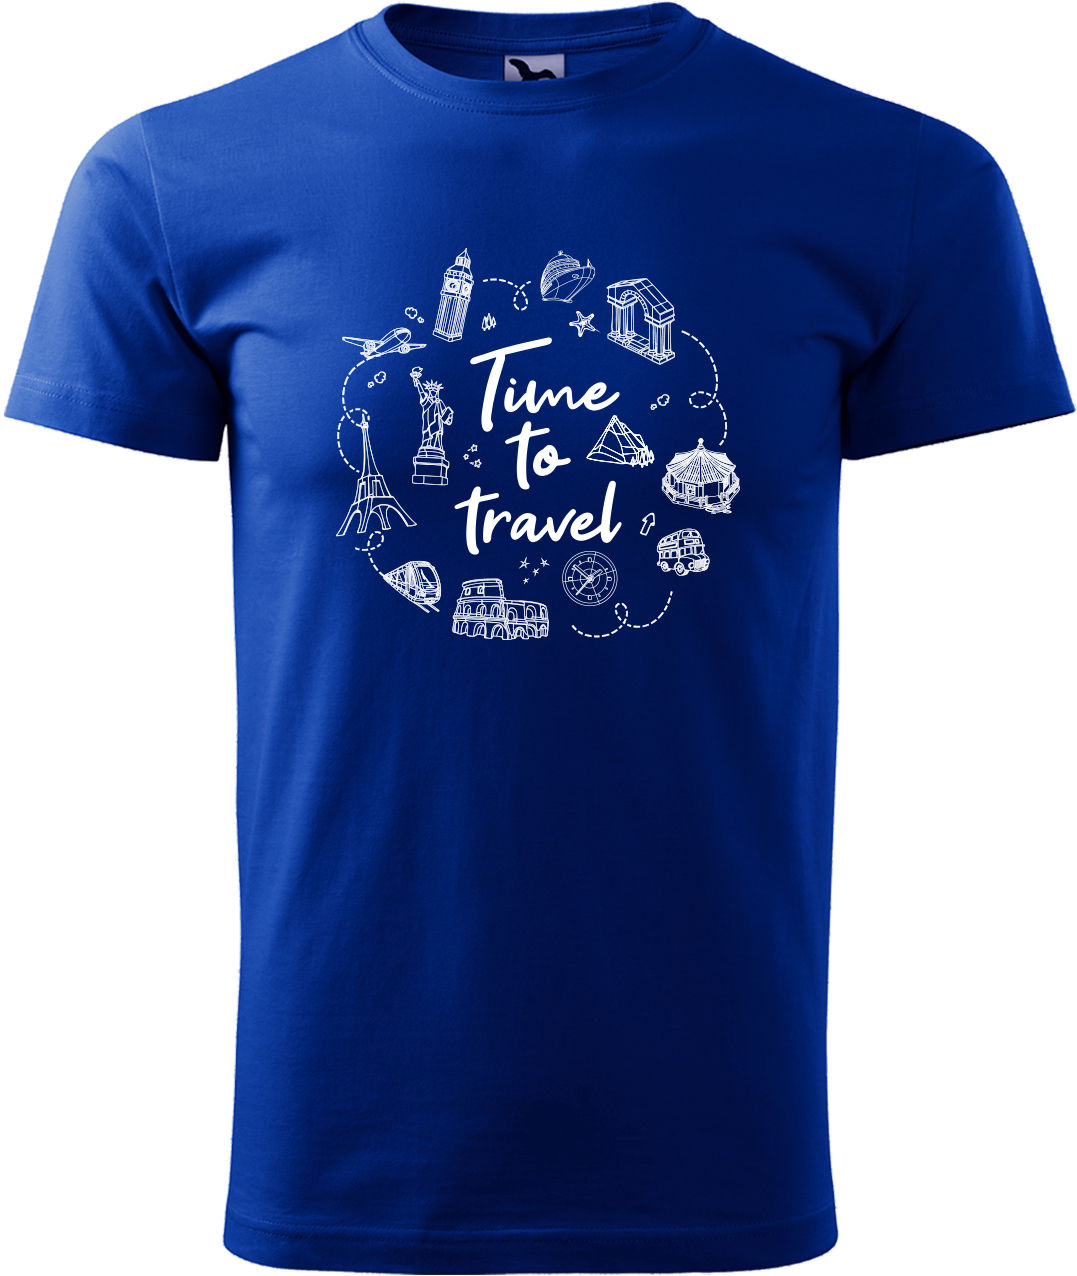 Pánské cestovatelské tričko - Time to travel Velikost: M, Barva: Královská modrá (05), Střih: pánský